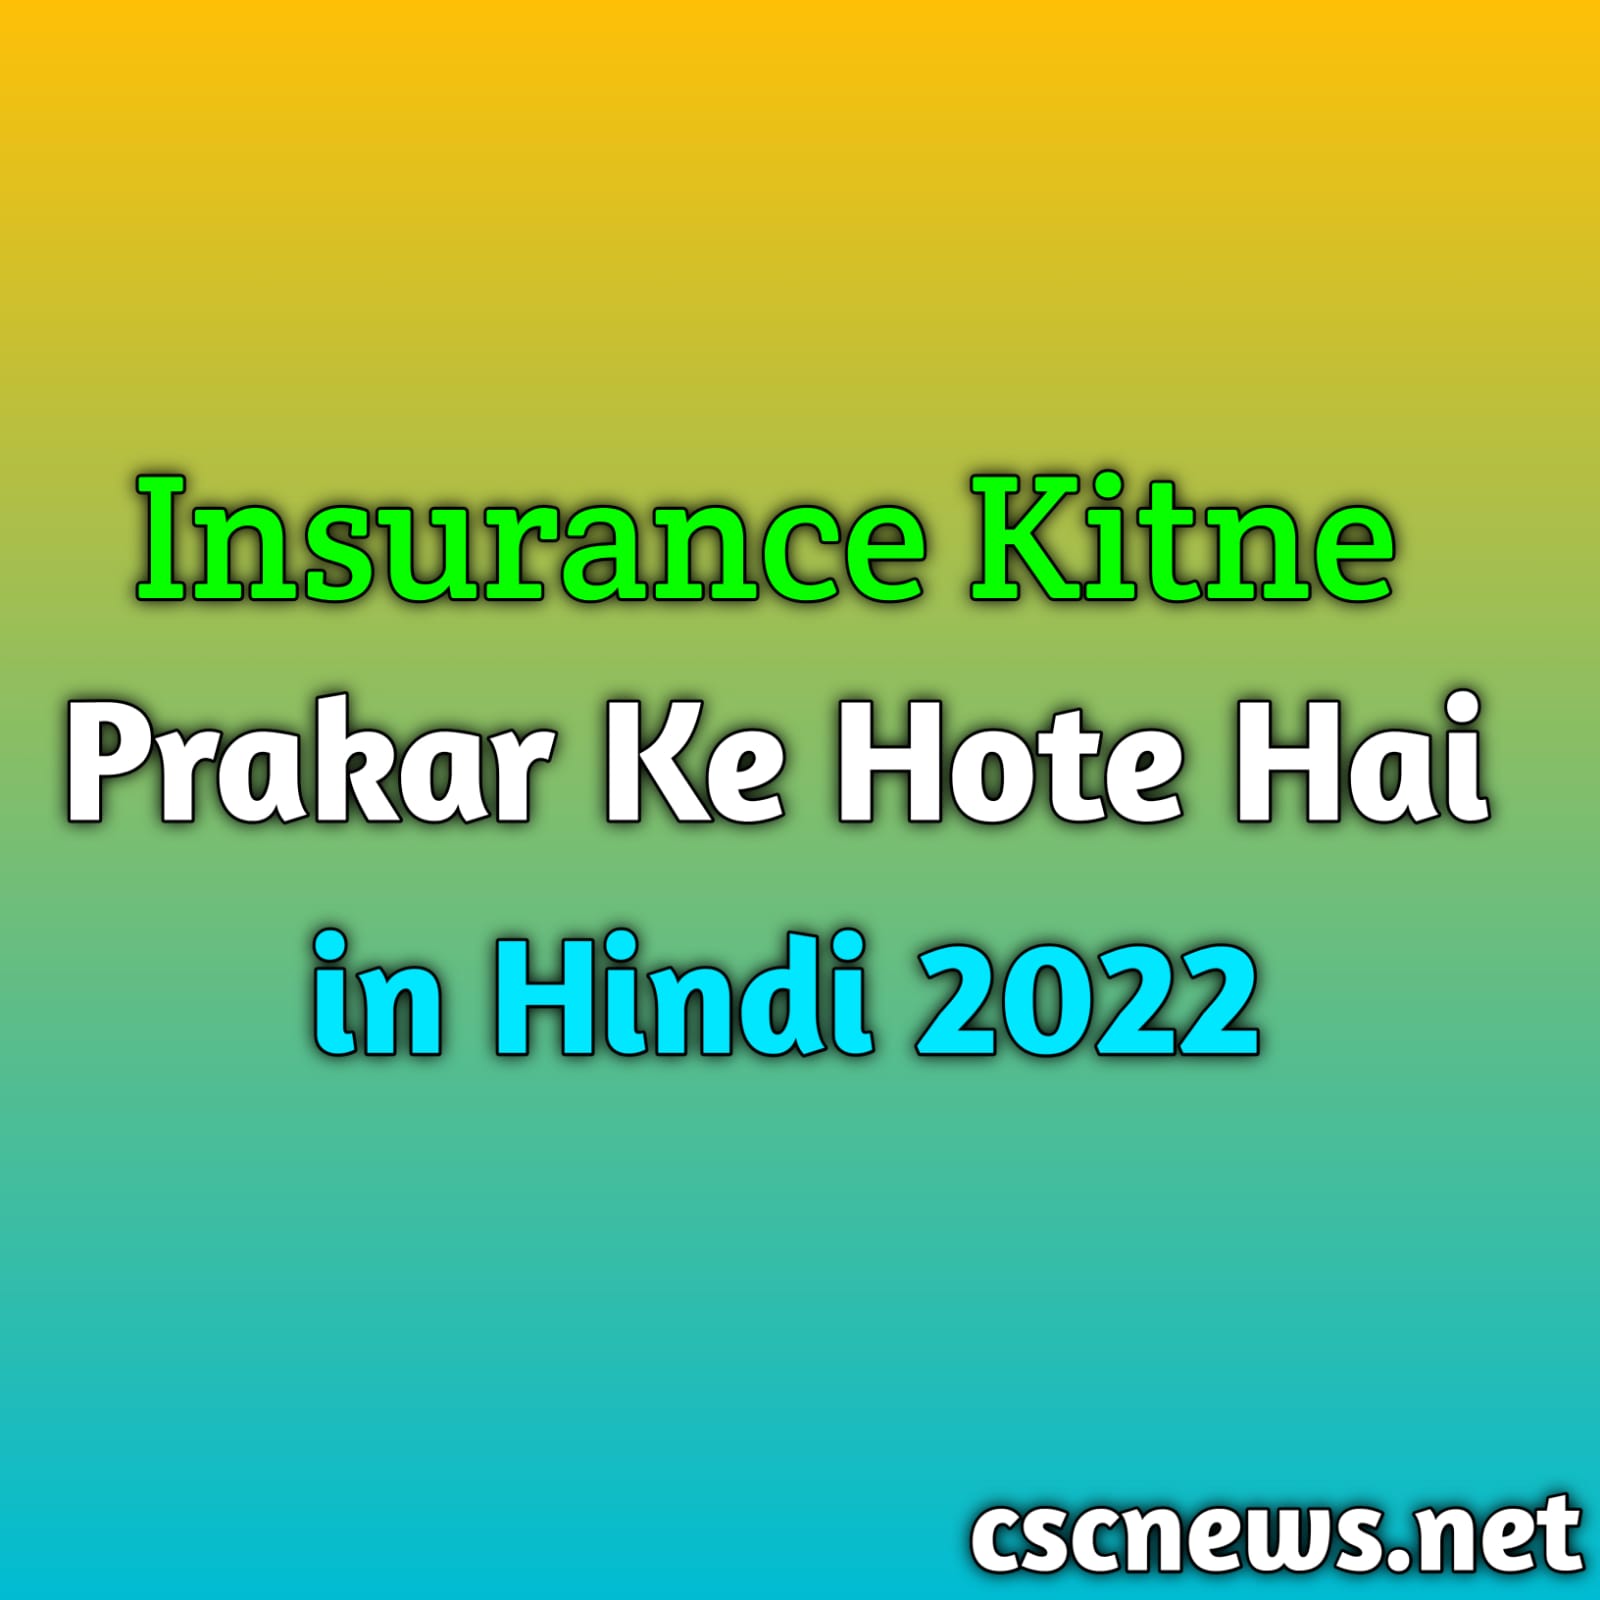 Insurance Kitne Prakar Ke Hote Hai